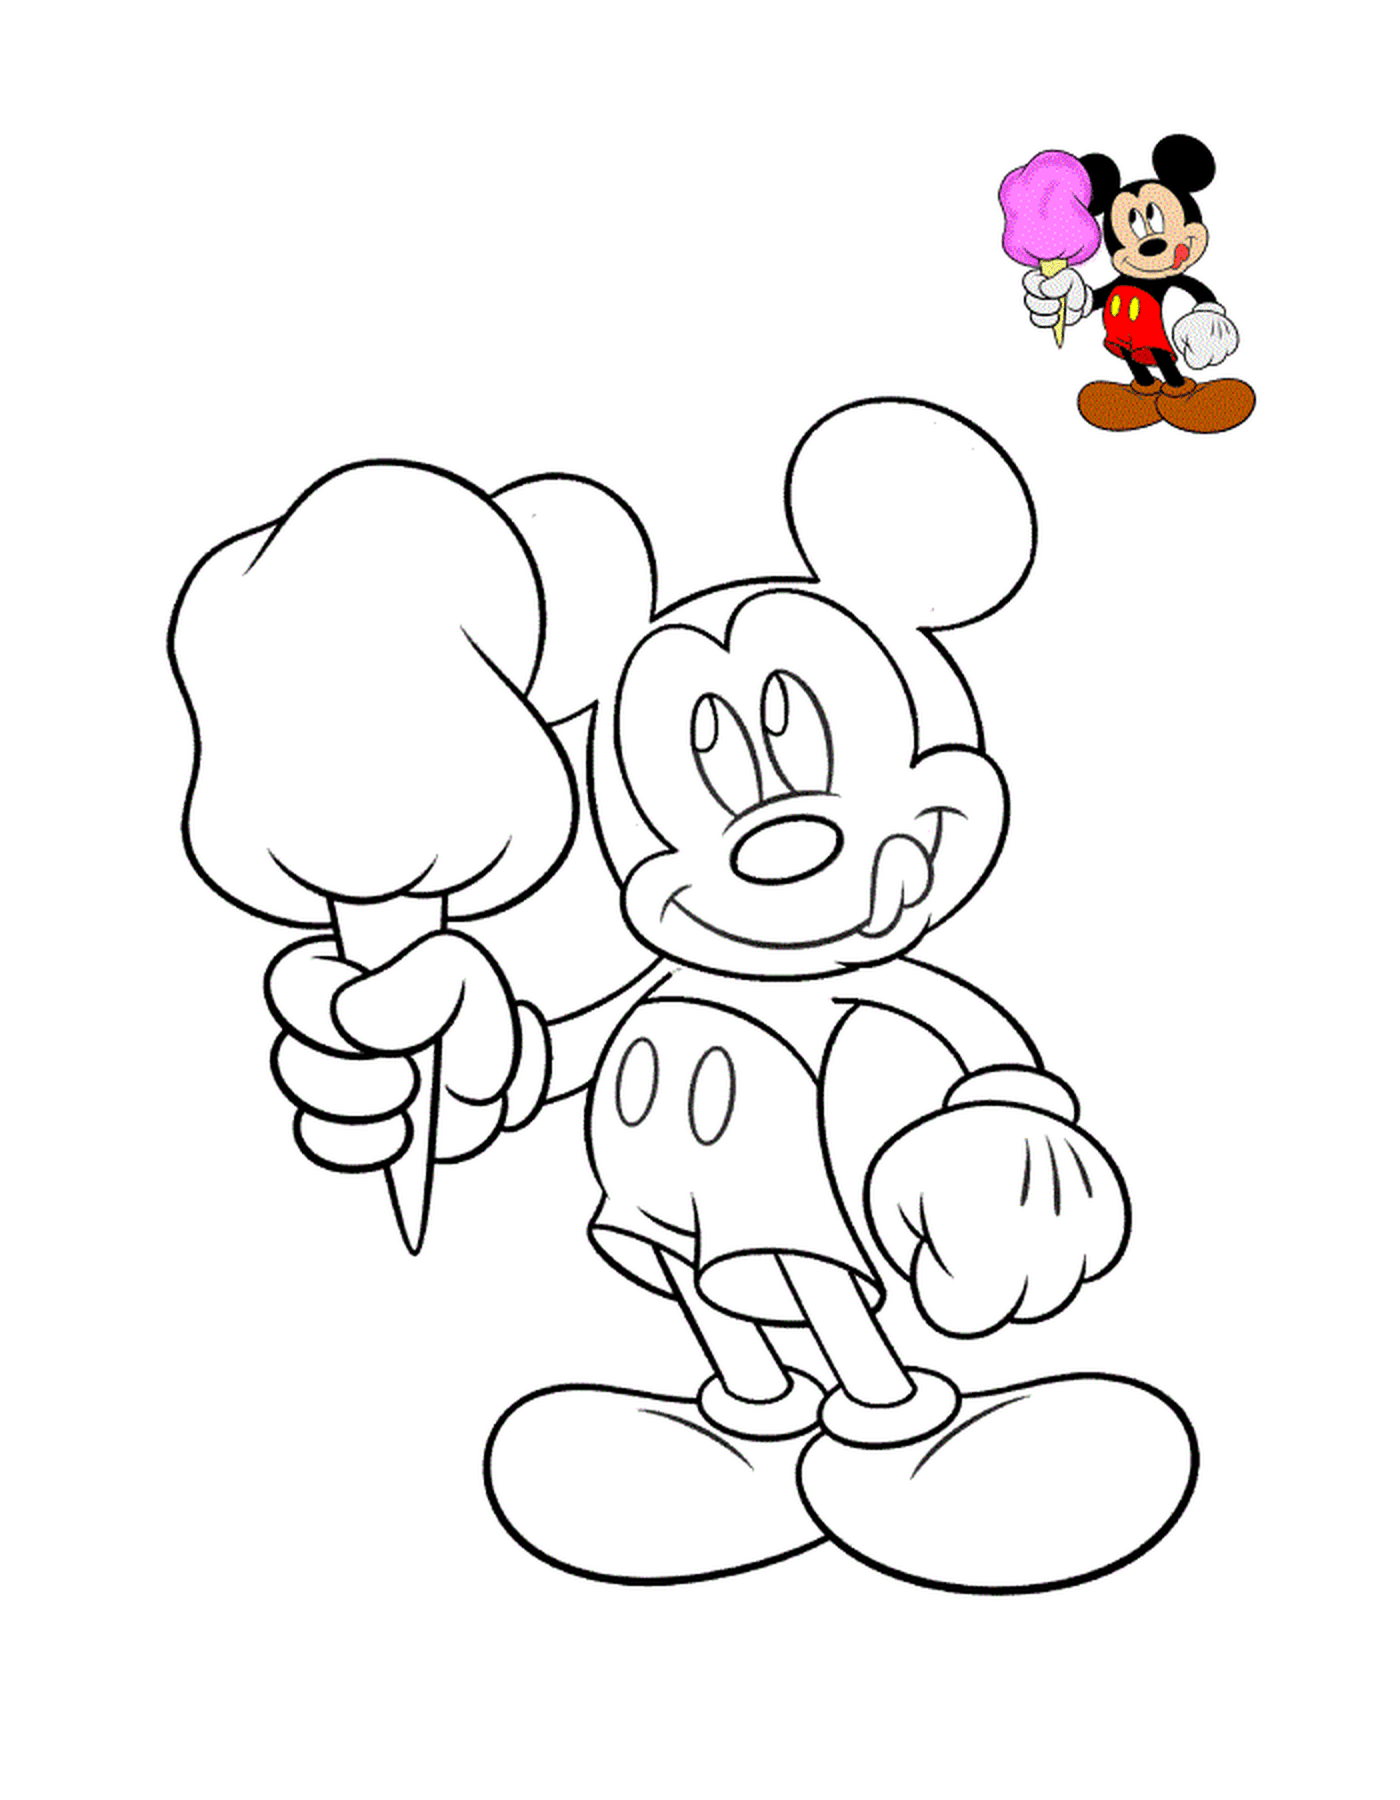  Mickey Mouse com delicioso sorvete 